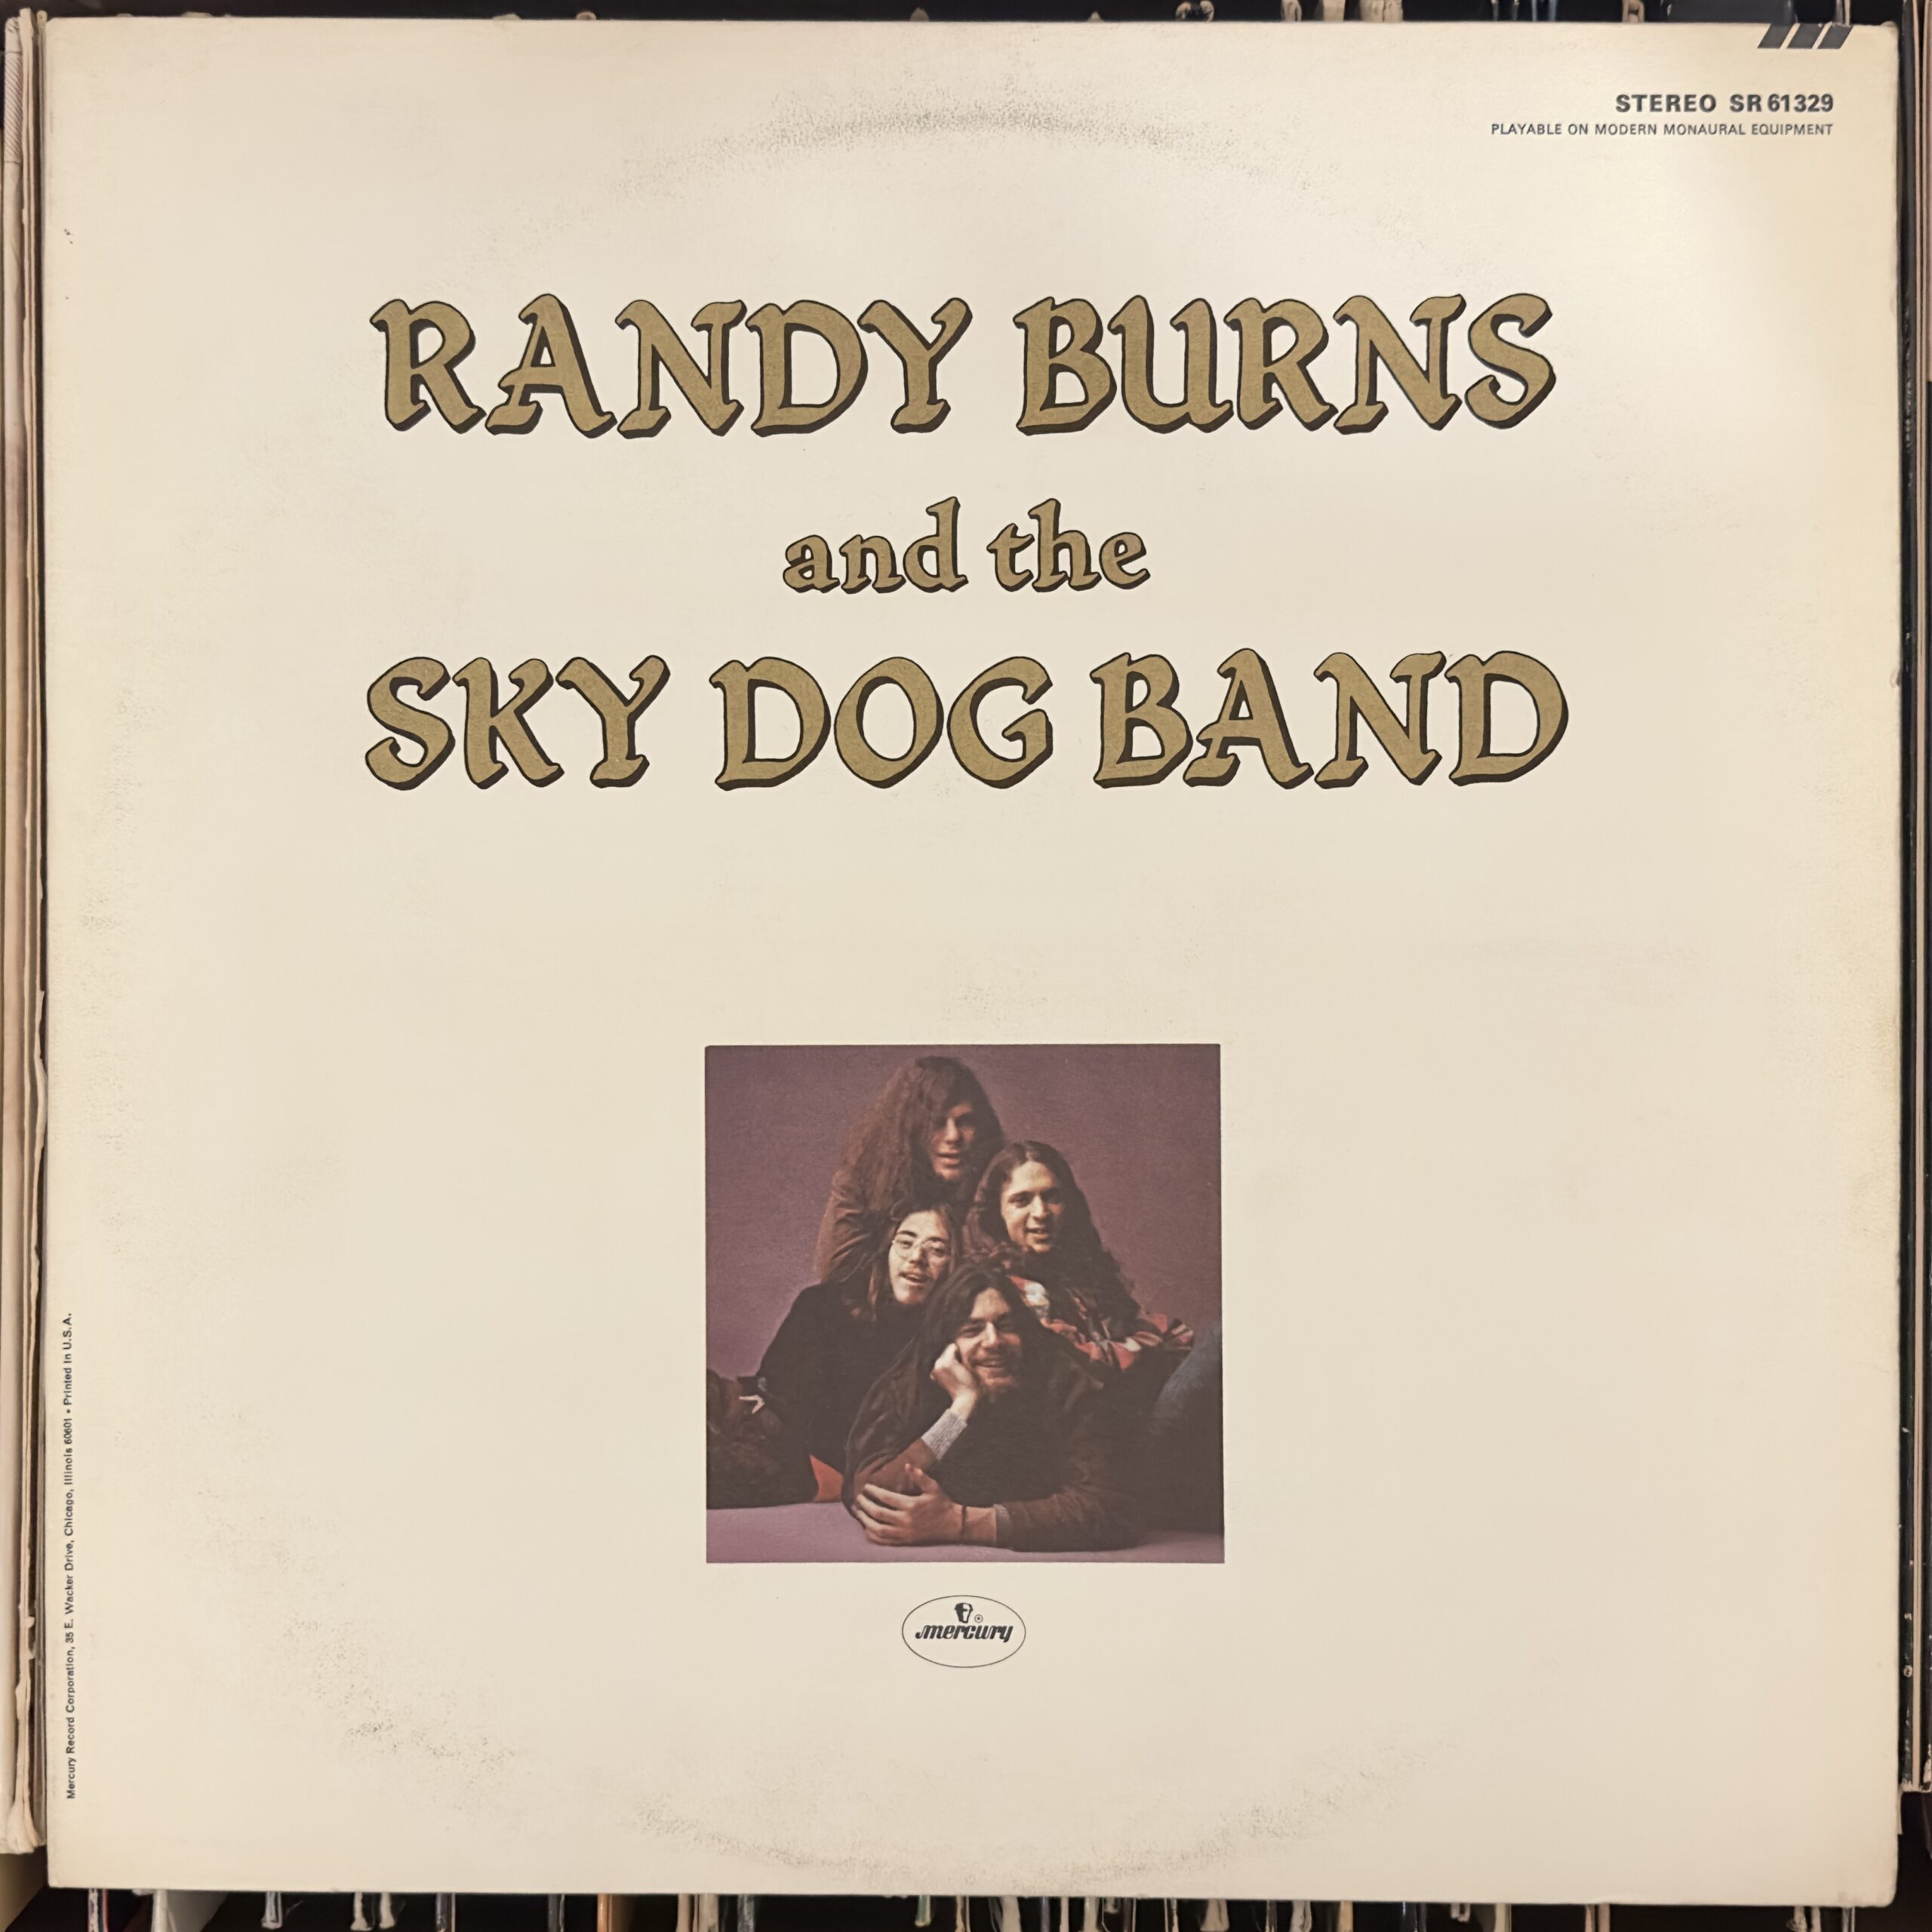 Randy Burns and the Sky Dog Band